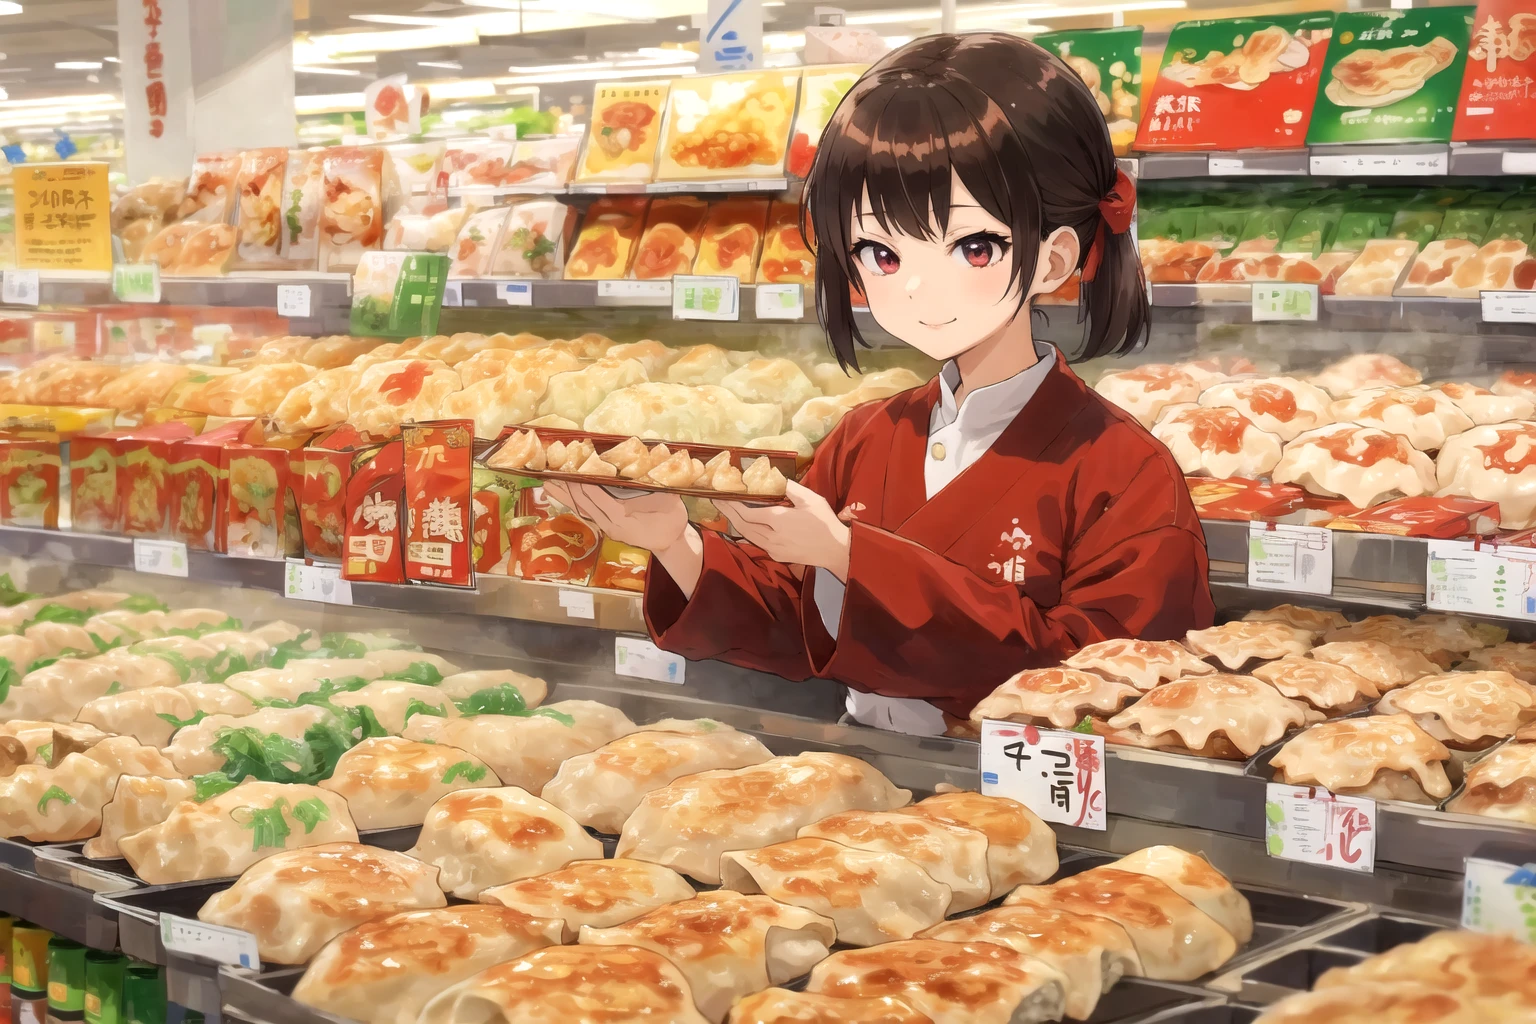 (melhor qualidade:1.4), anime, Sozinho, Uma menina no supermercado gyoza bolinhos jiaozi